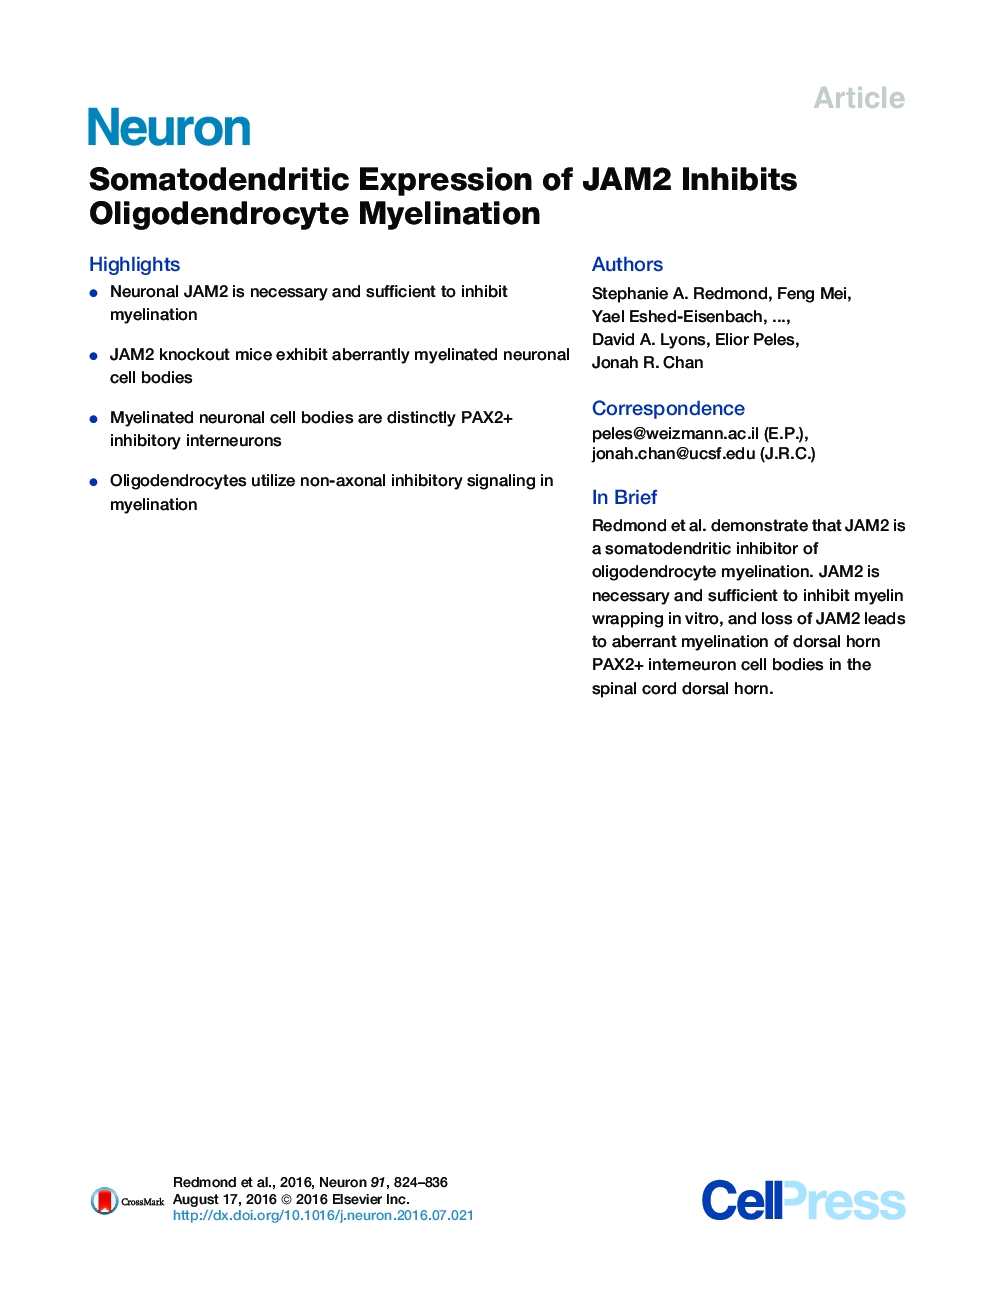 Somatodendritic Expression of JAM2 Inhibits Oligodendrocyte Myelination